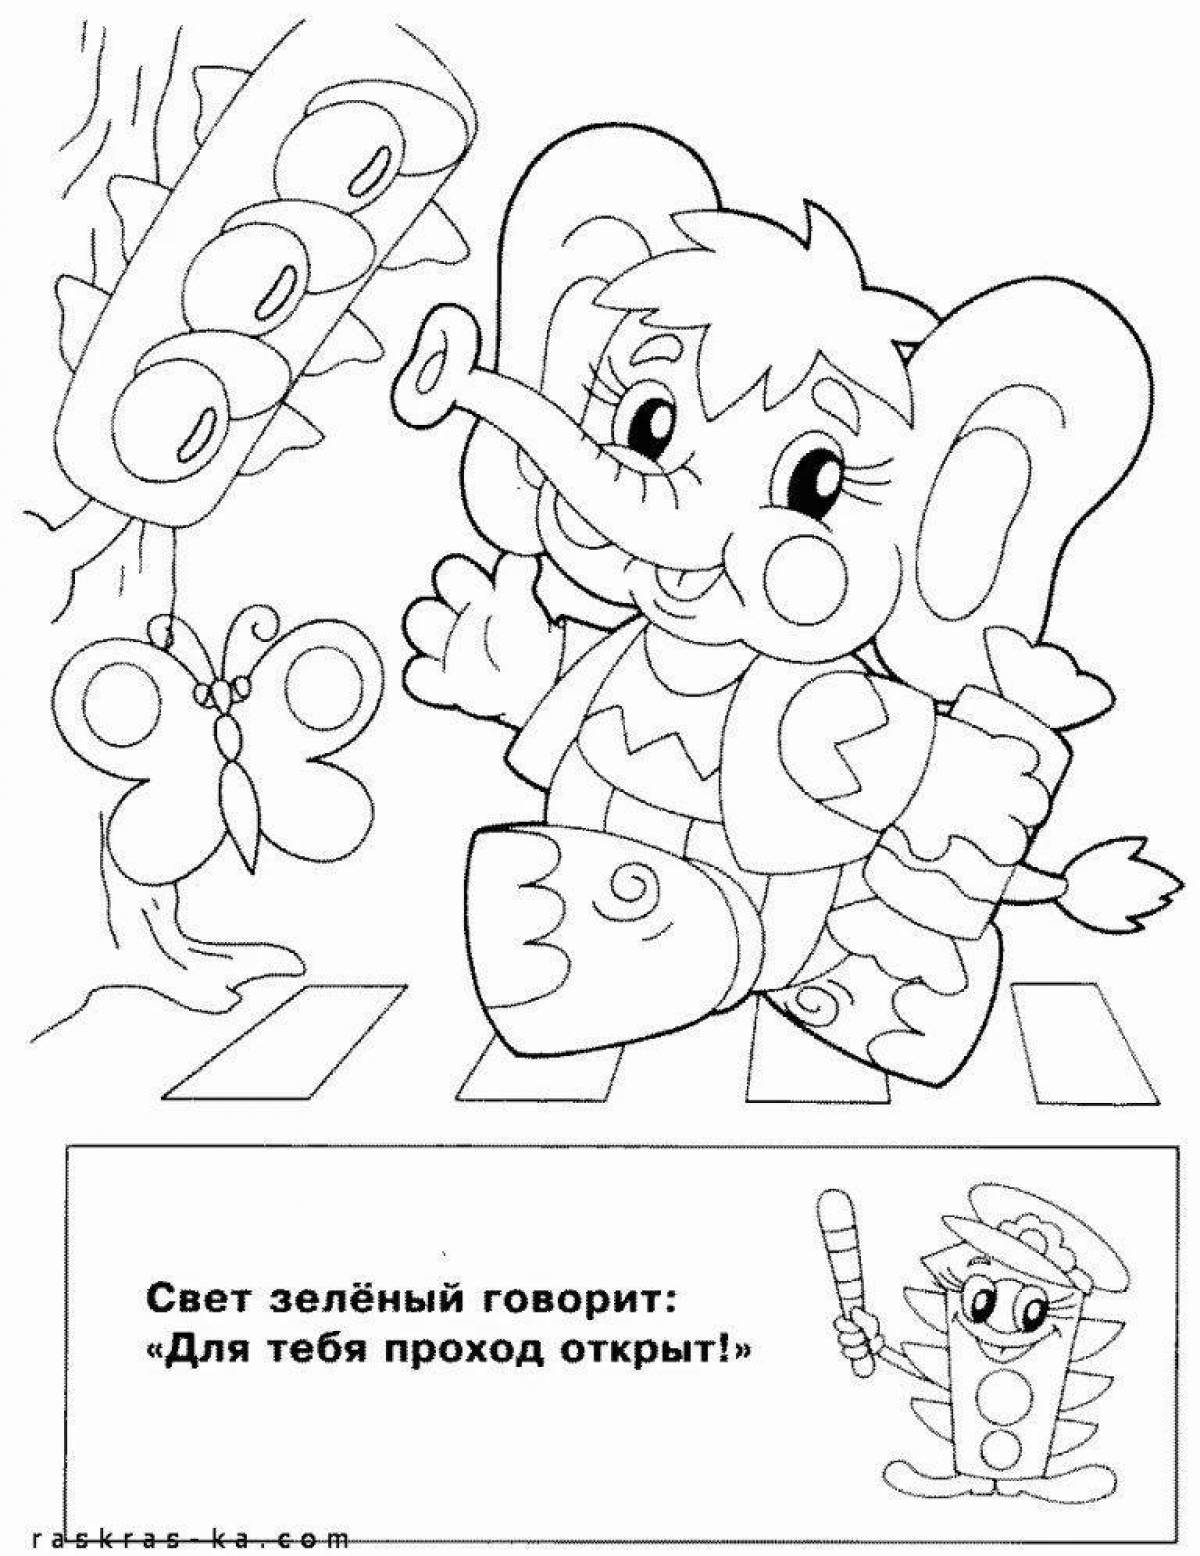 Купить Раскраска «Изучаем ПДД», 12 стр для детских садов и ДОУ по выгодной цене, доставка по РФ